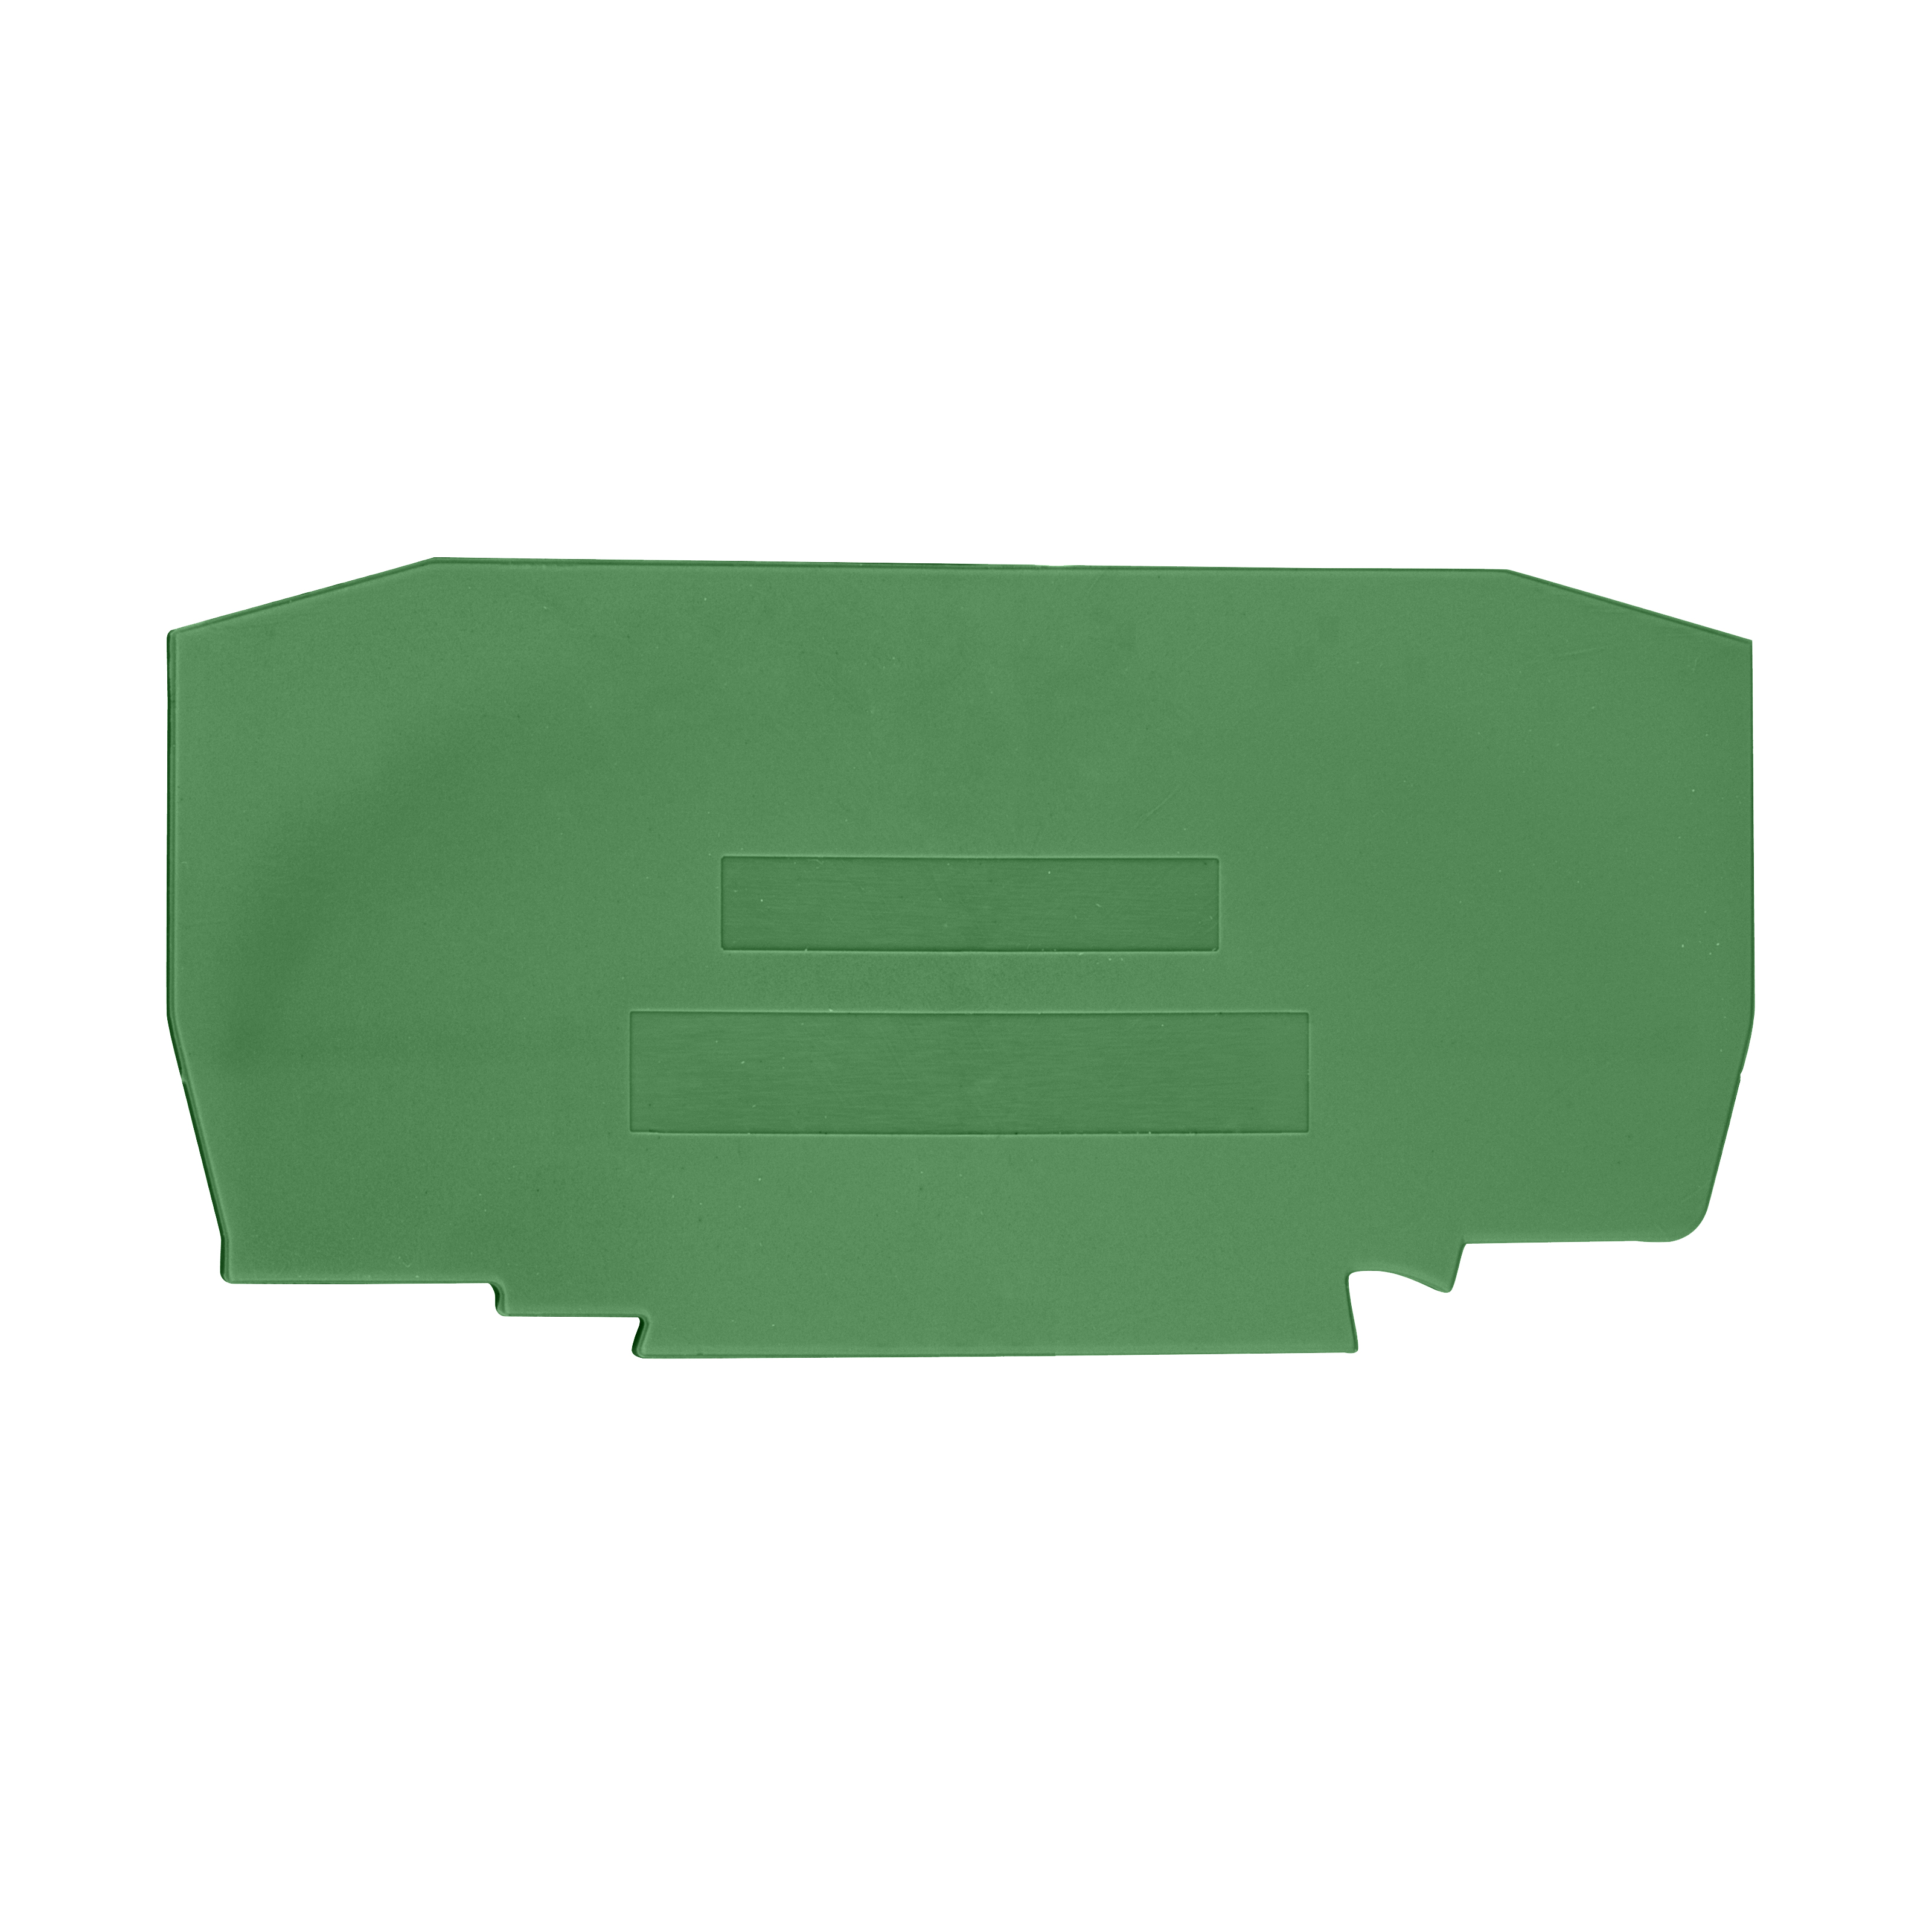 Foto: Endplatte für Federkraftklemme YBK 10 T grün (c) Schrack